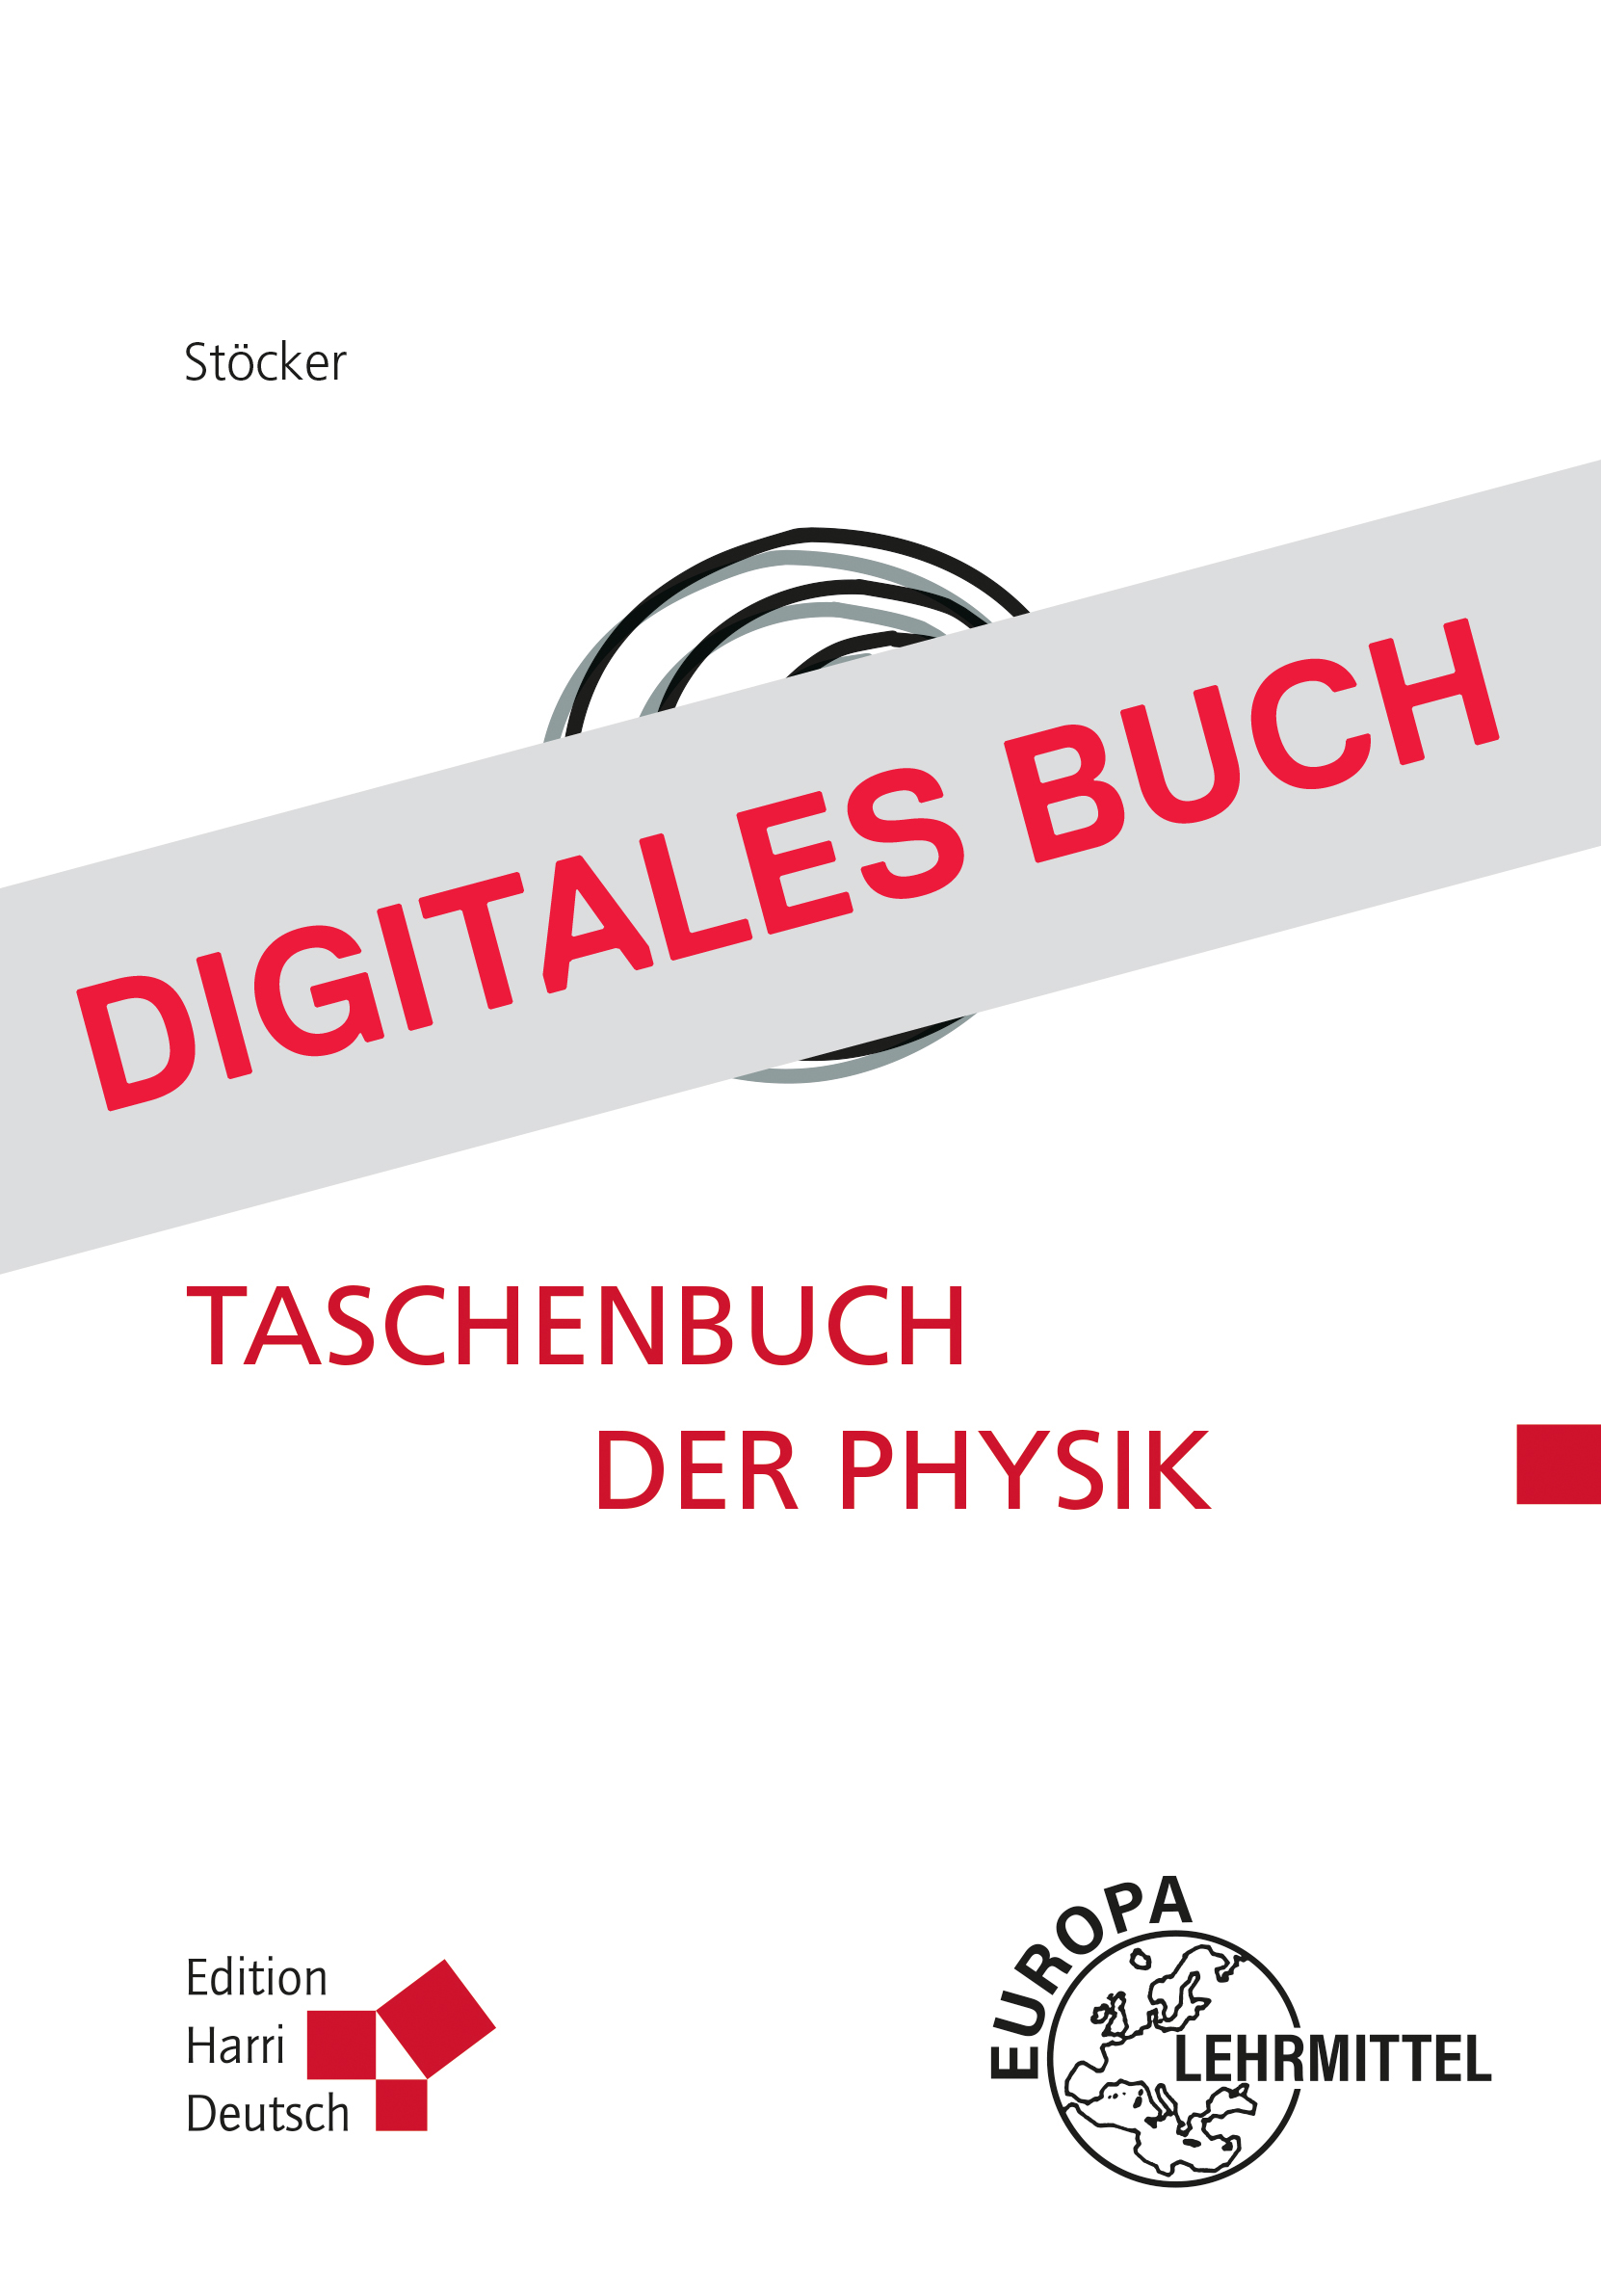 Taschenbuch der Physik - Digitales Buch